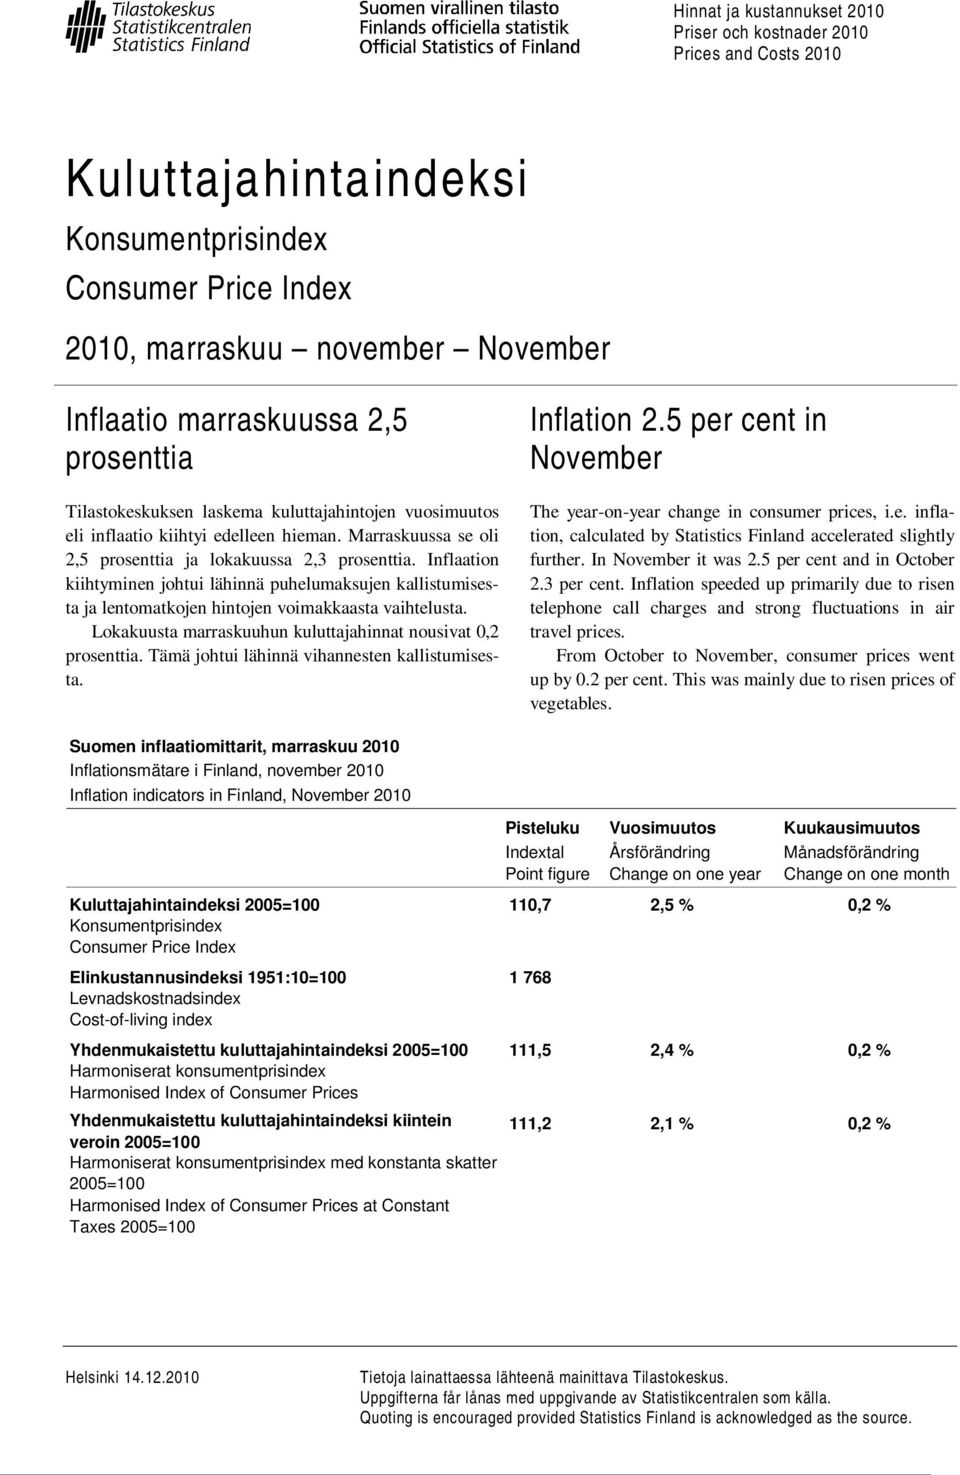 Inflaation kiihtyminen johtui lähinnä puhelumaksujen kallistumisesta ja lentomatkojen hintojen voimakkaasta vaihtelusta. Lokakuusta marraskuuhun kuluttajahinnat nousivat 0,2 prosenttia.